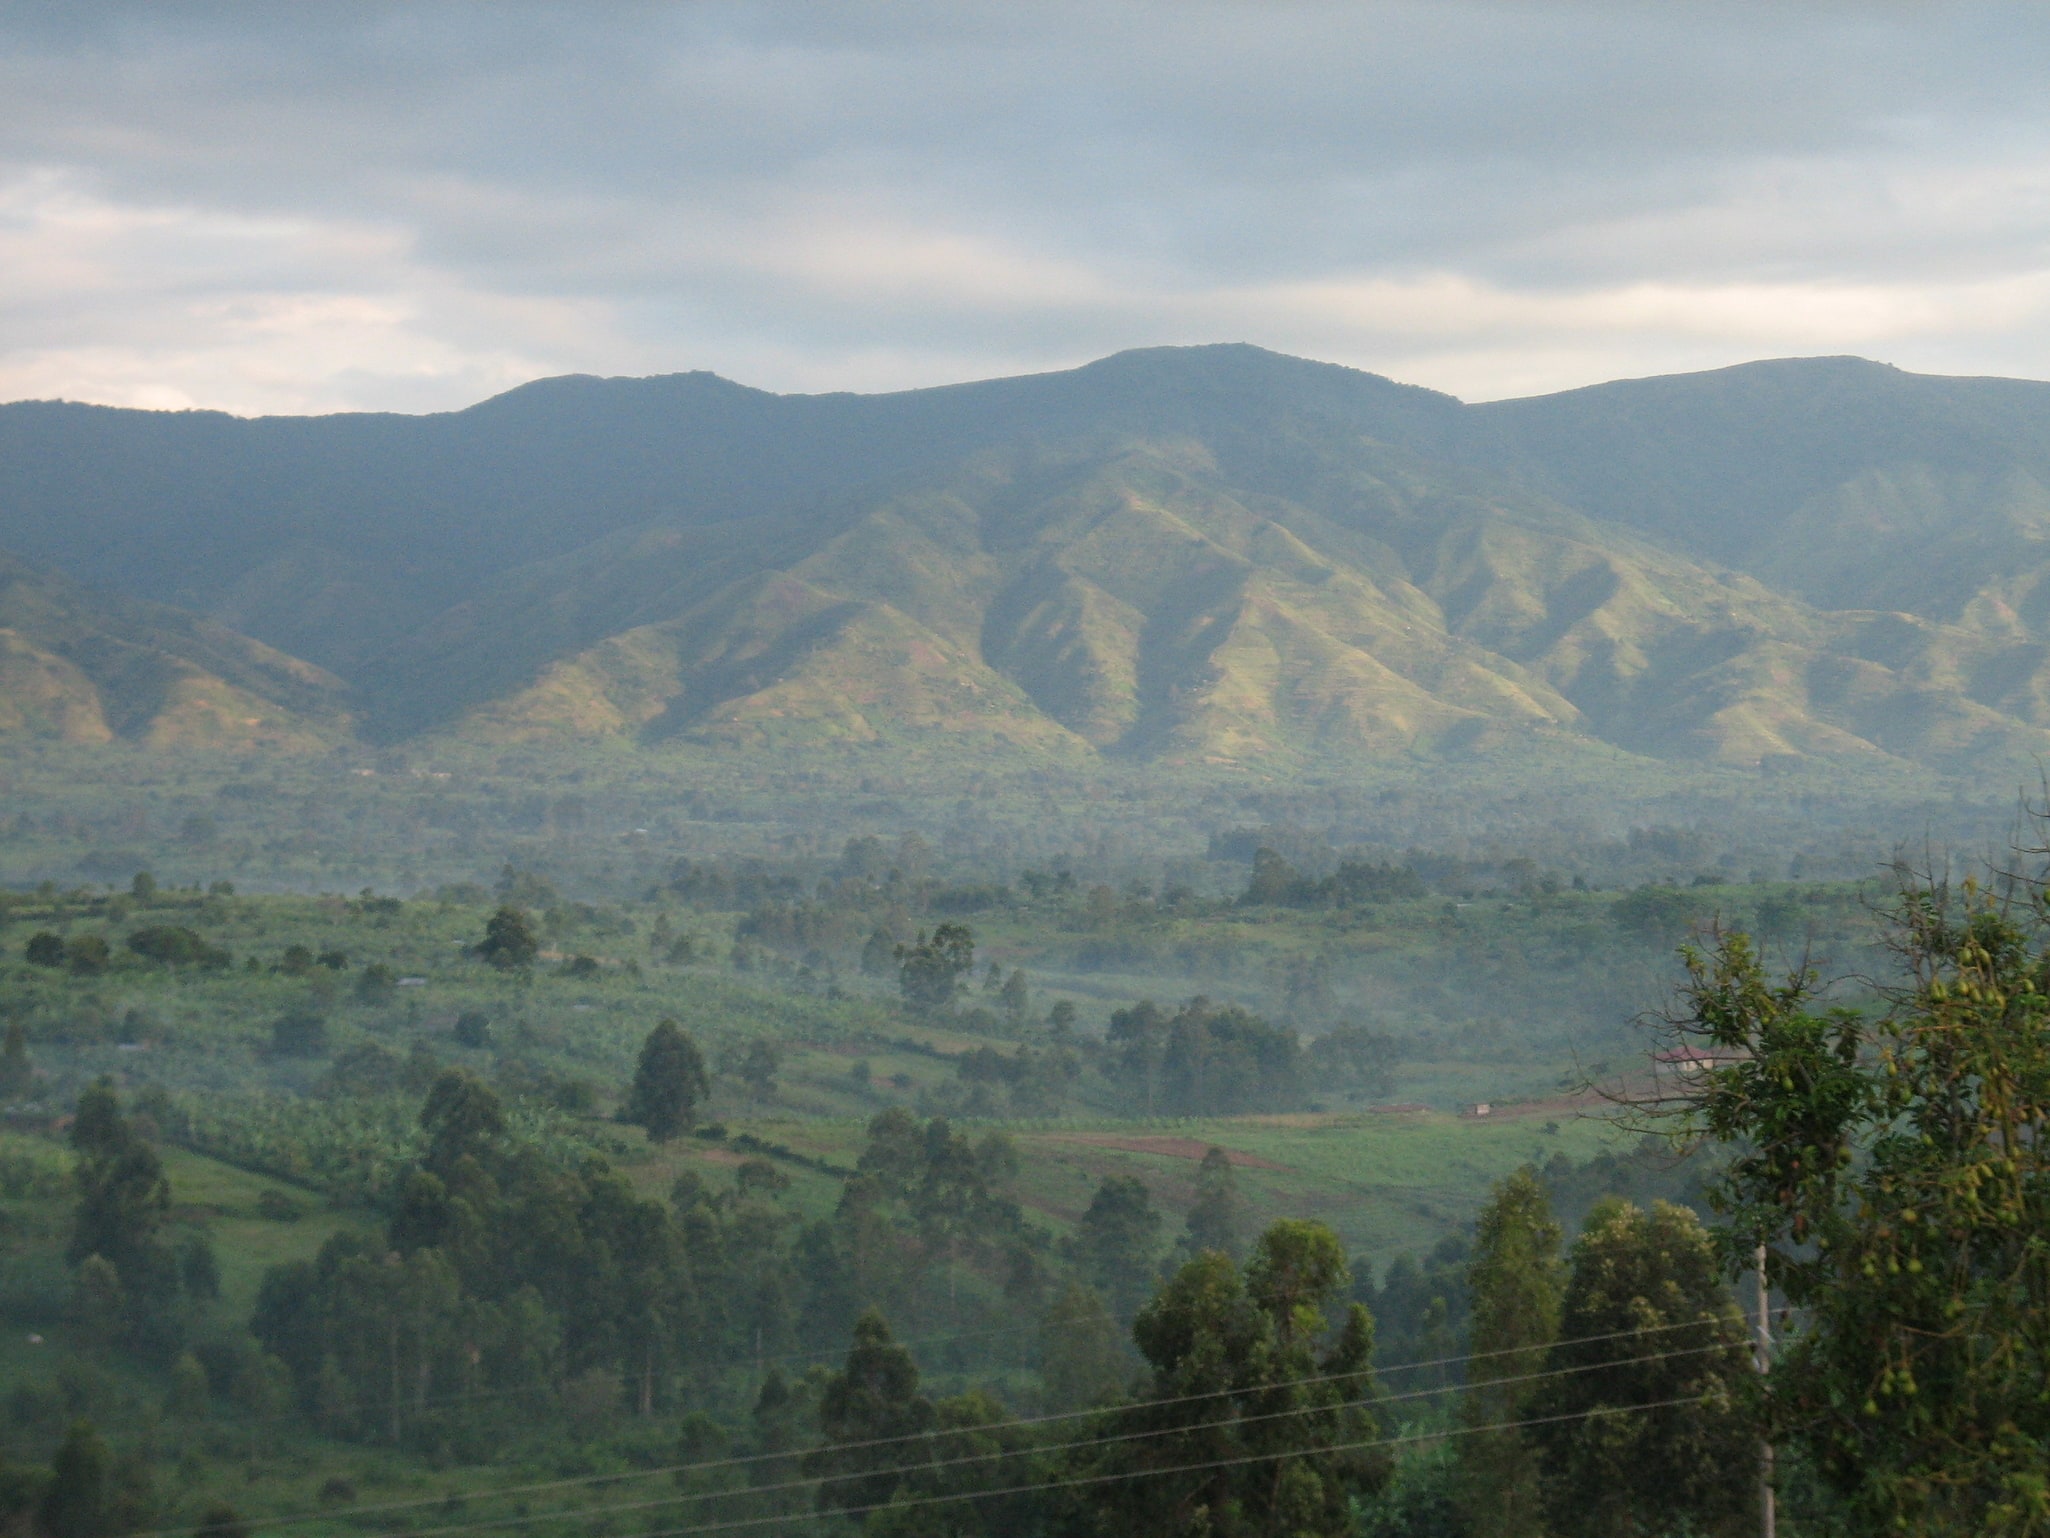 Rwenzori Mountains National Park, Uganda